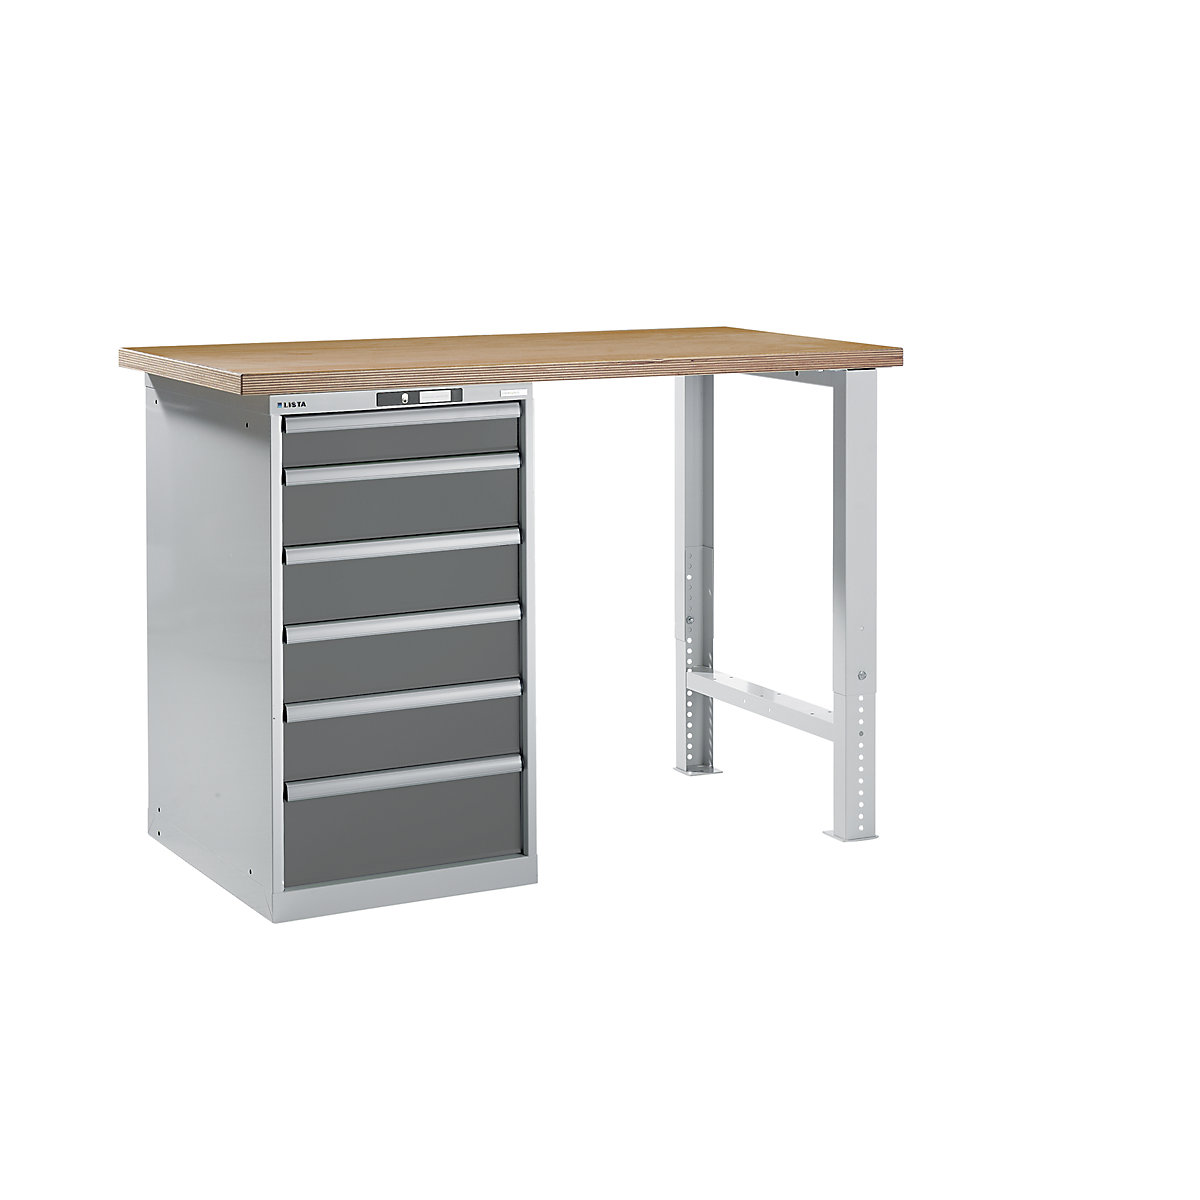 LISTA – Radna klupa kao modularni sustav, visina 1040 mm, ormar za postavljanje ispod stola, 6 ladice, u sivoj metalik boji, širina stola 1500 mm